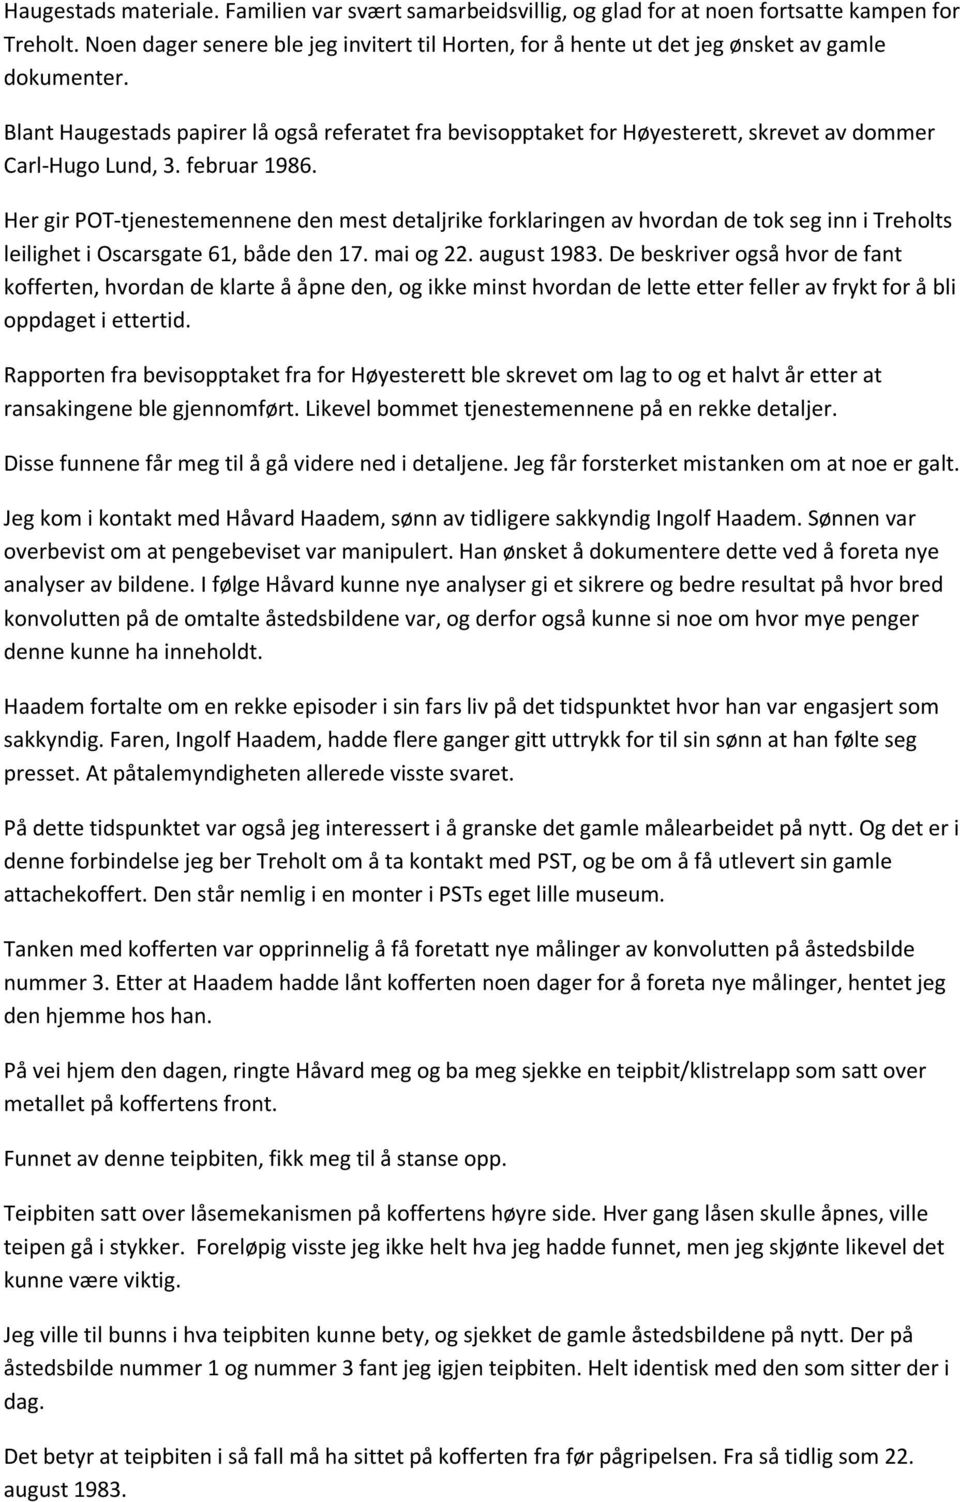 Blant Haugestads papirer lå også referatet fra bevisopptaket for Høyesterett, skrevet av dommer Carl-Hugo Lund, 3. februar 1986.